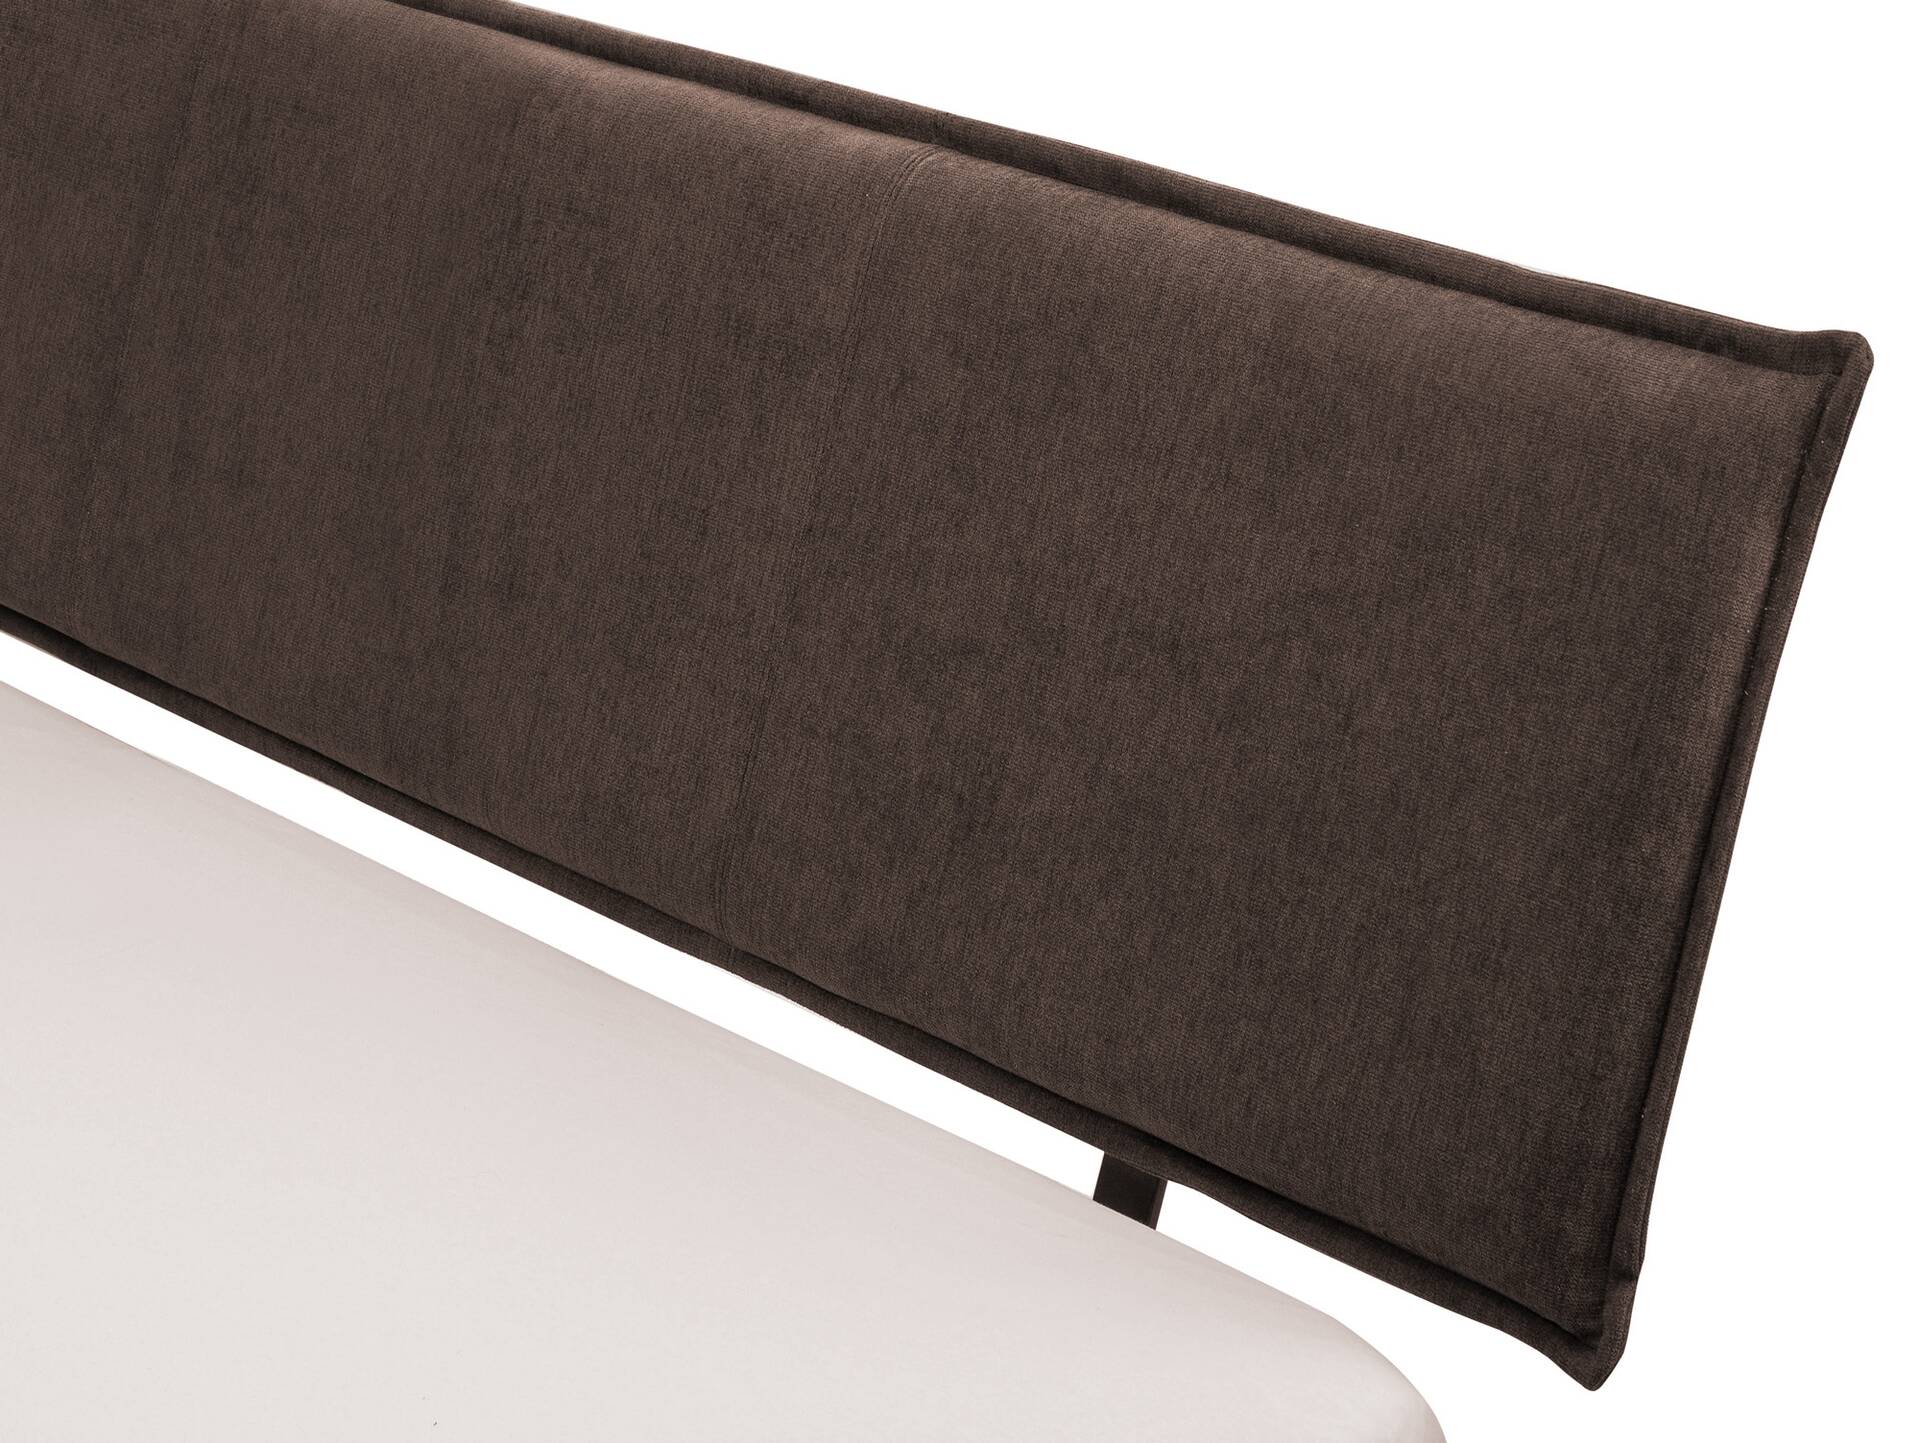 CORDINO 4-Fuß-Bett aus Eiche mit Polster-Kopfteil, Material Massivholz 120 x 200 cm | Eiche unbehandelt | Stoff Braun | gebürstet